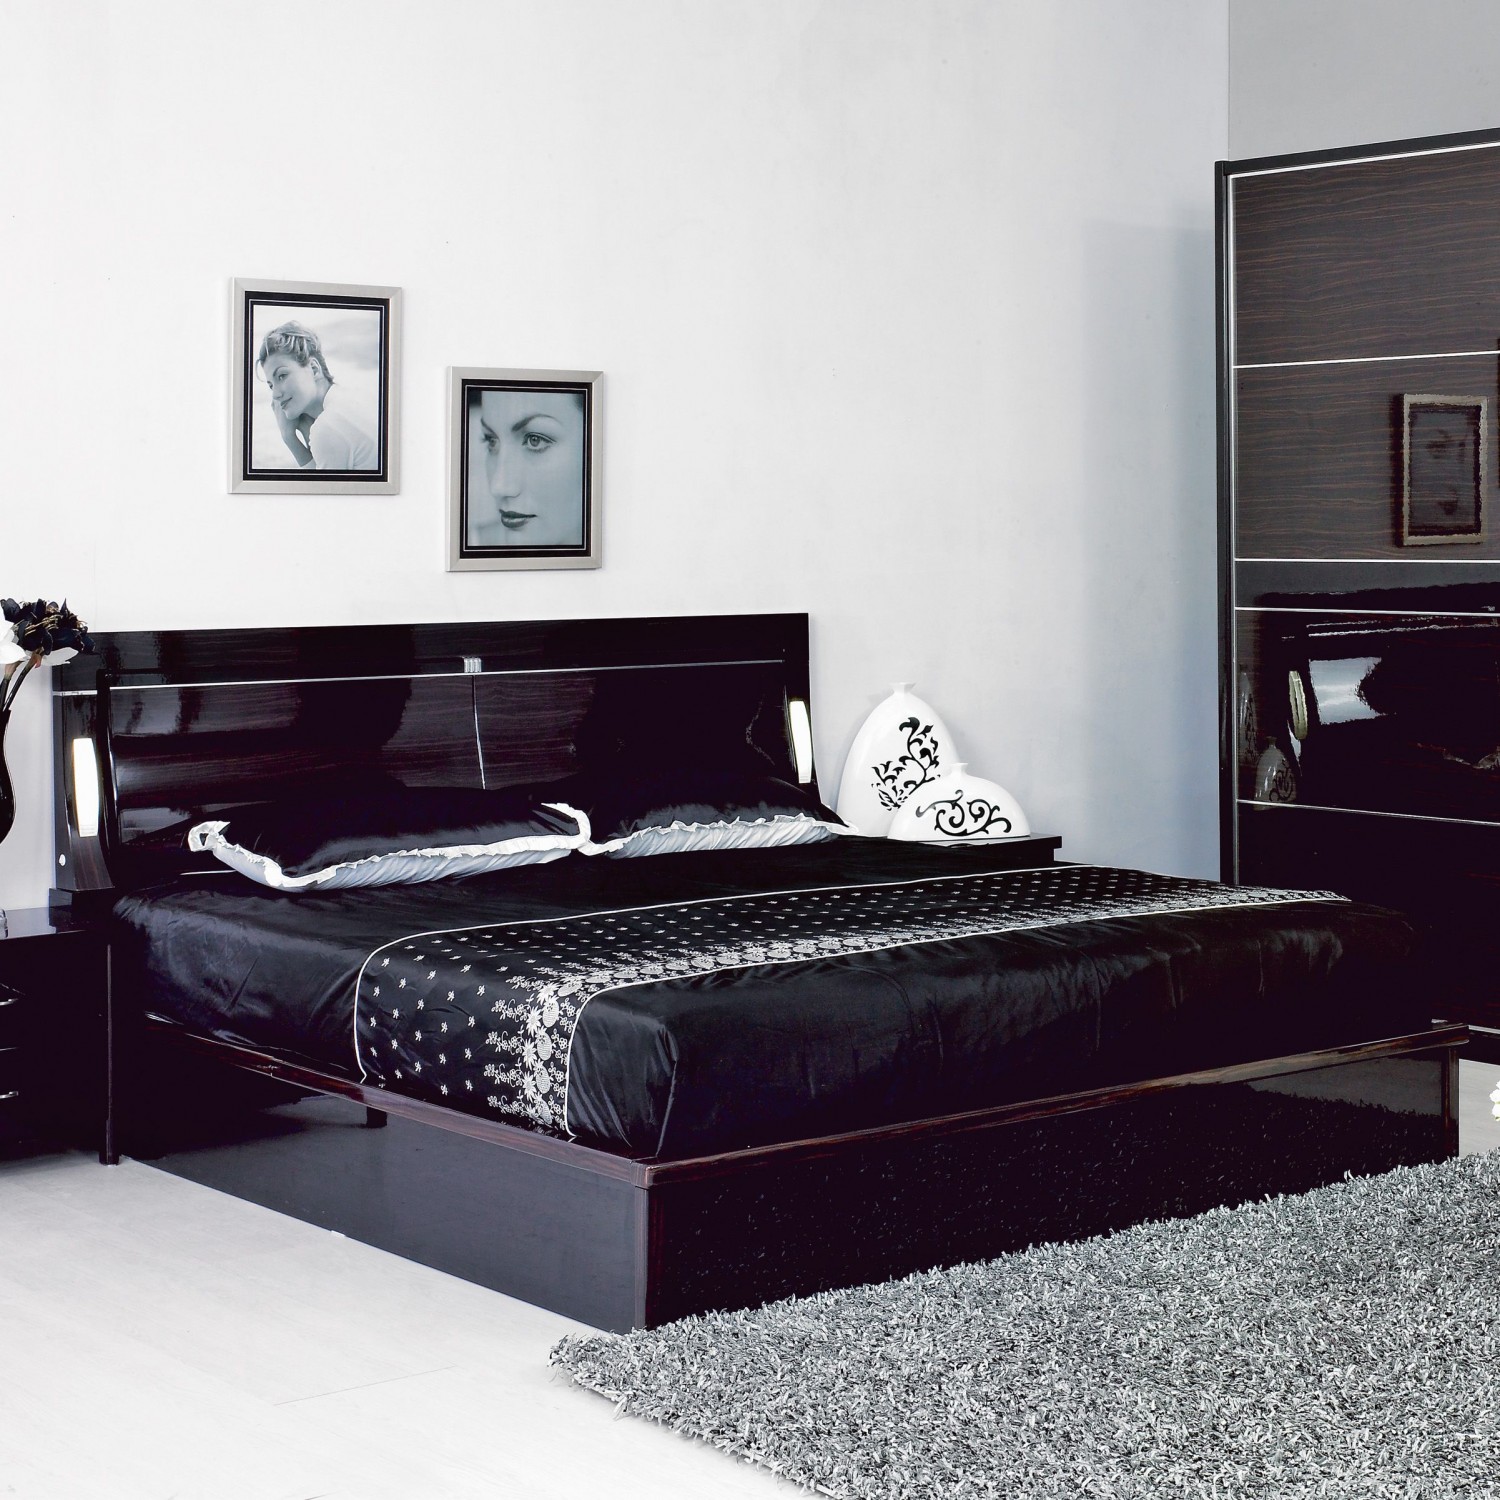 Кровати темного цвета. Черная кровать. Спальня с черной мебелью. Кровать черного цвета. Черный спальный гарнитур.